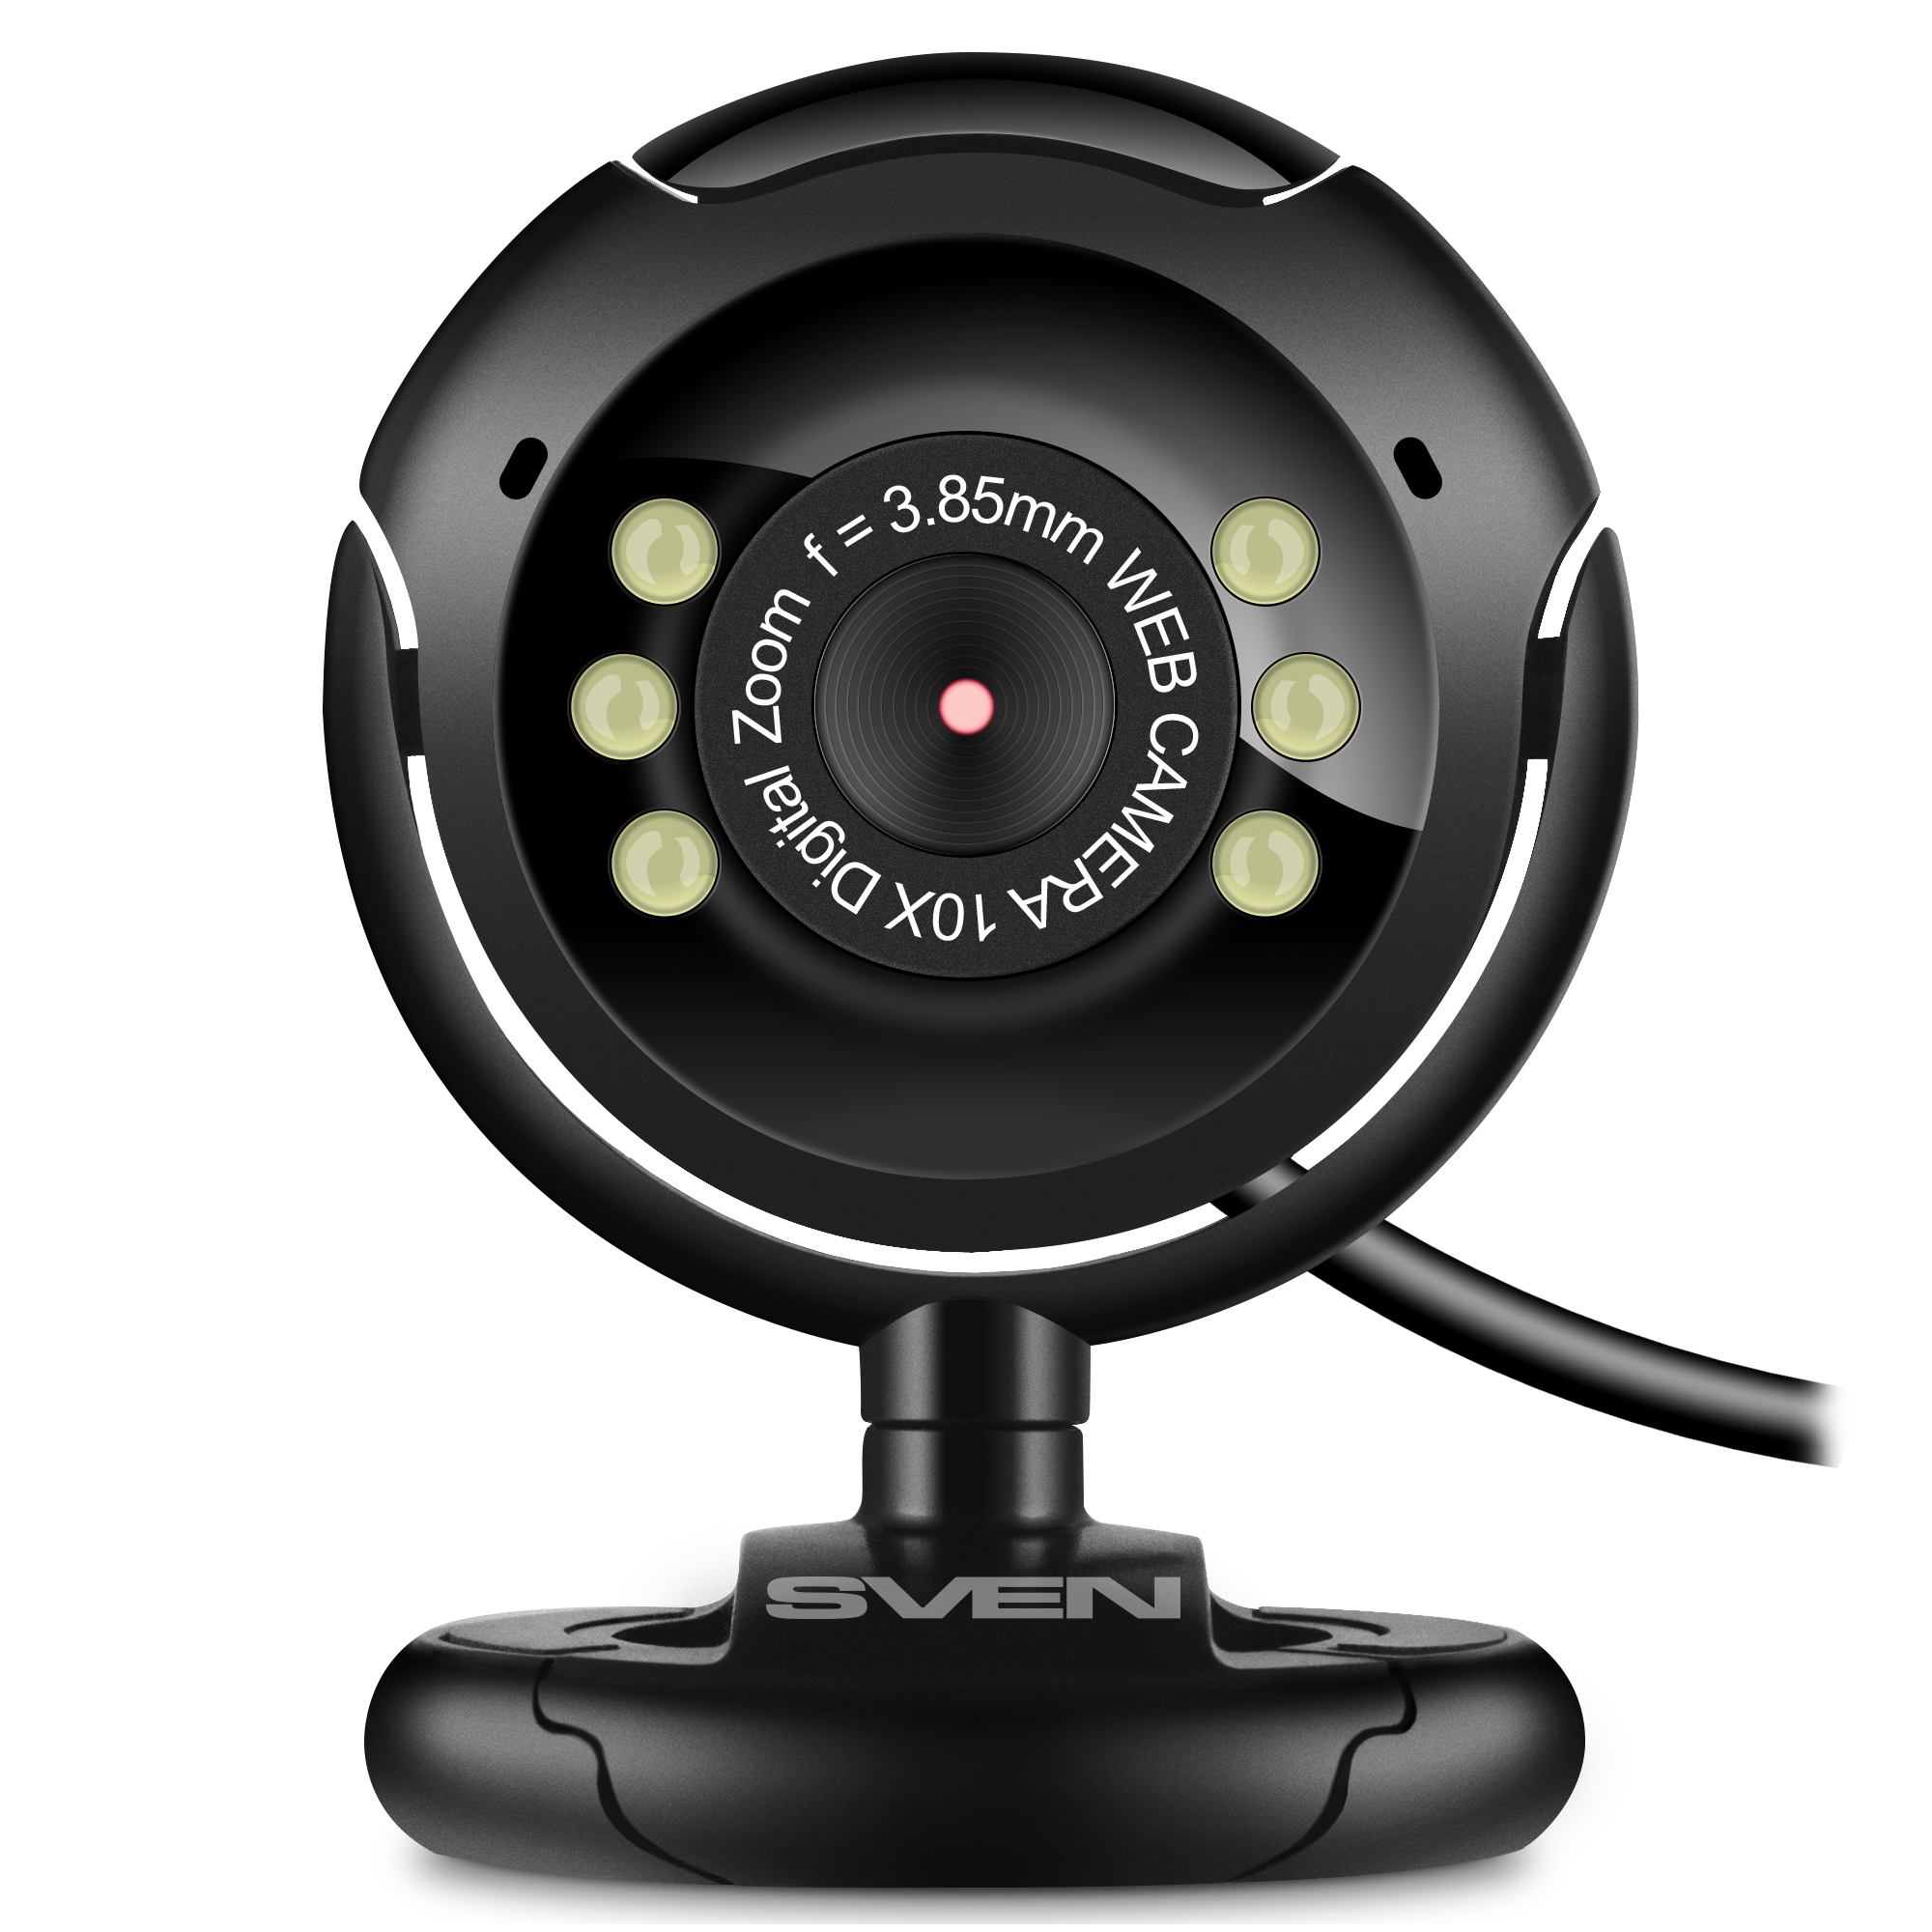 Вебкамера Sven IC-302, 0.3 MP, 640x480, встроенный микрофон, USB 2.0, черный (SV-020668)